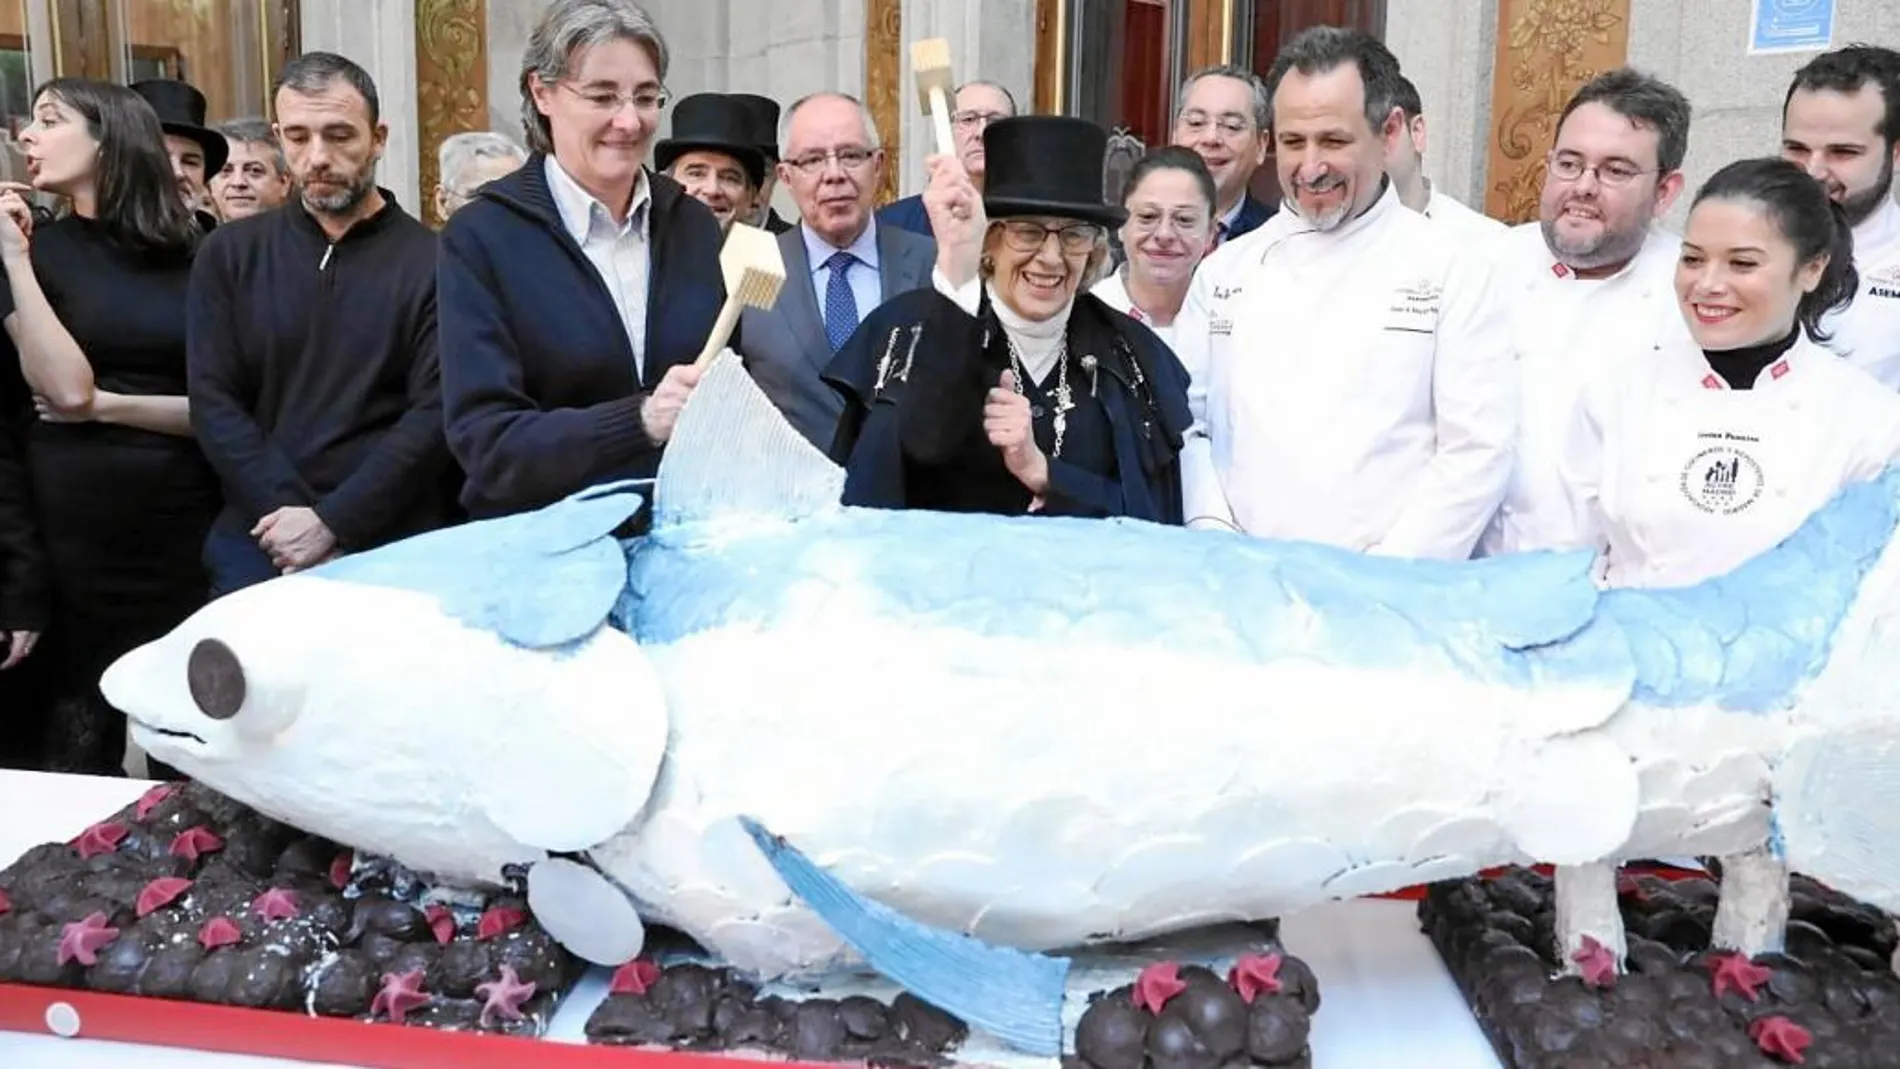 La alcaldesa junto a varios miembros de su Gobierno en el tradicional acto de entierro de la sardina que pone fin a los festejos del Carnaval